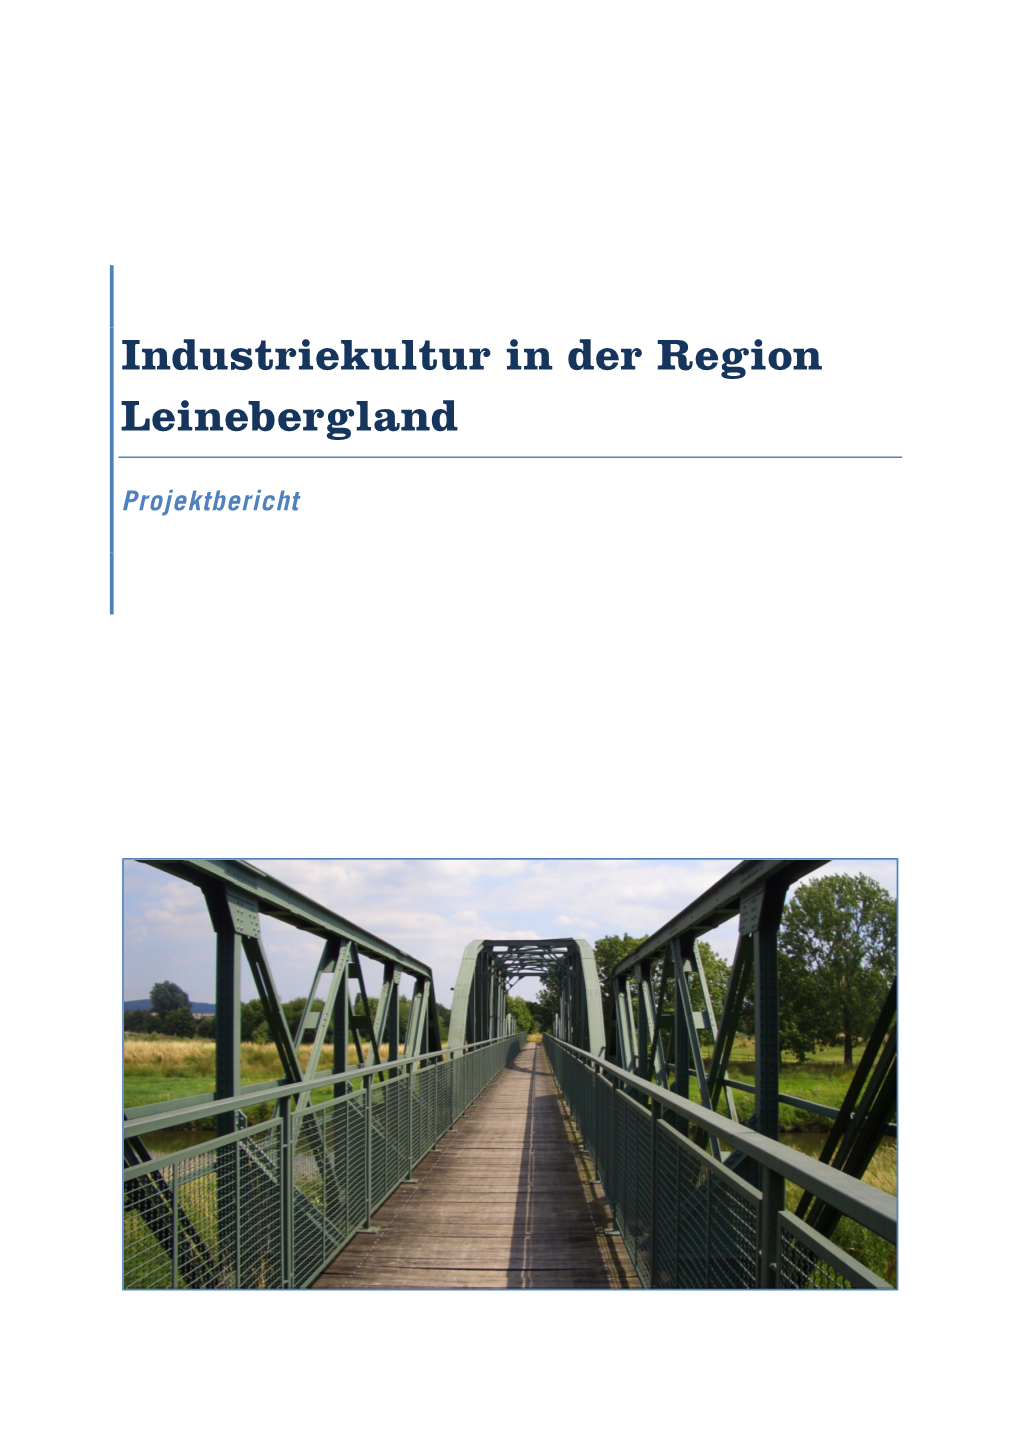 Industriekultur in Der Region Leinebergland